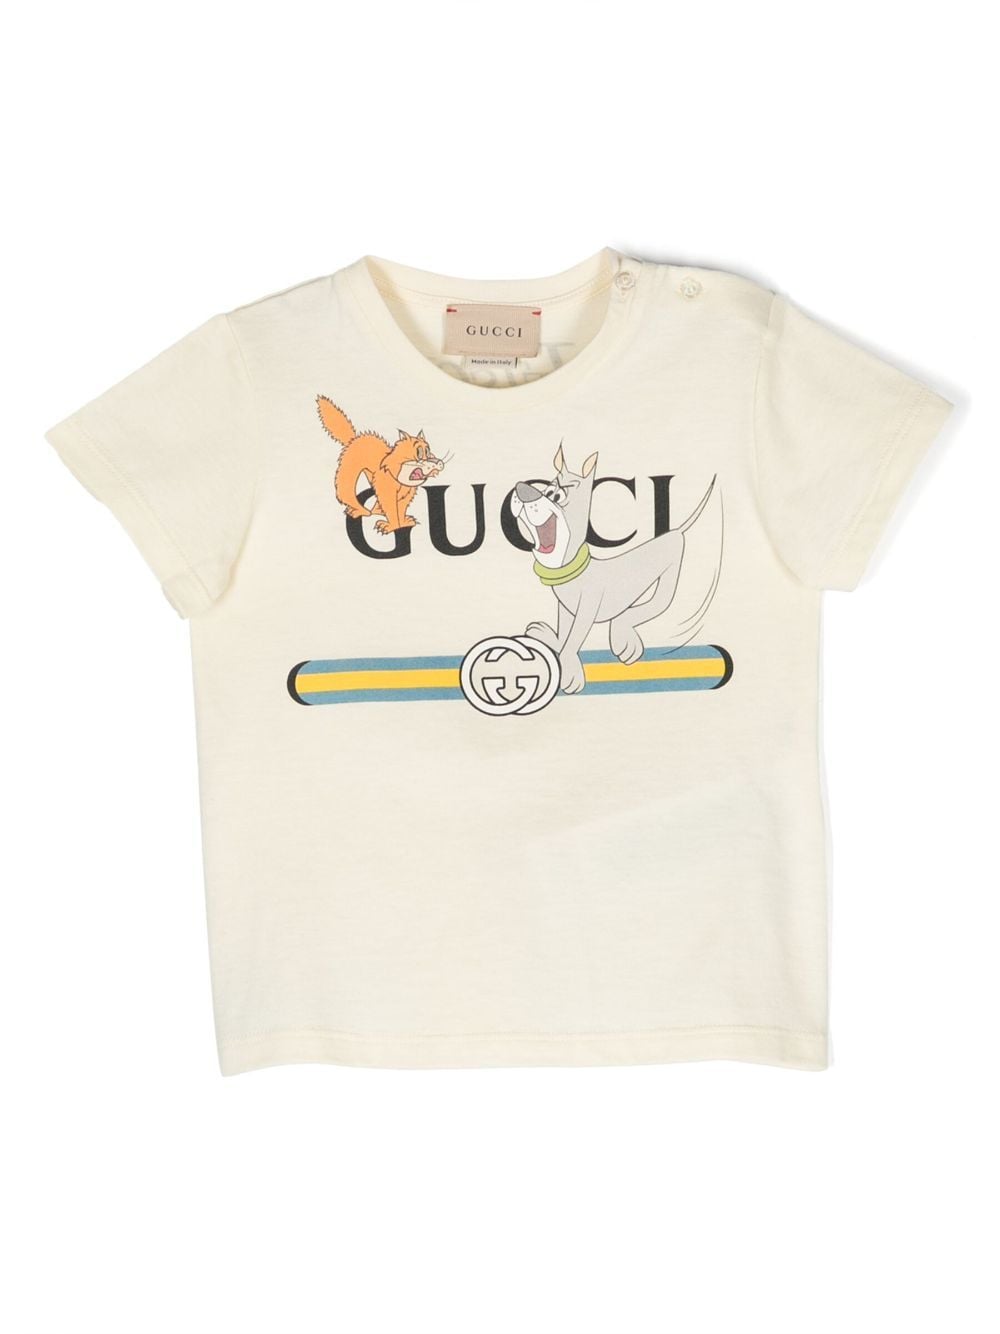 Gucci Kids The Jetsons cotton T-shirt - Neutrals von Gucci Kids